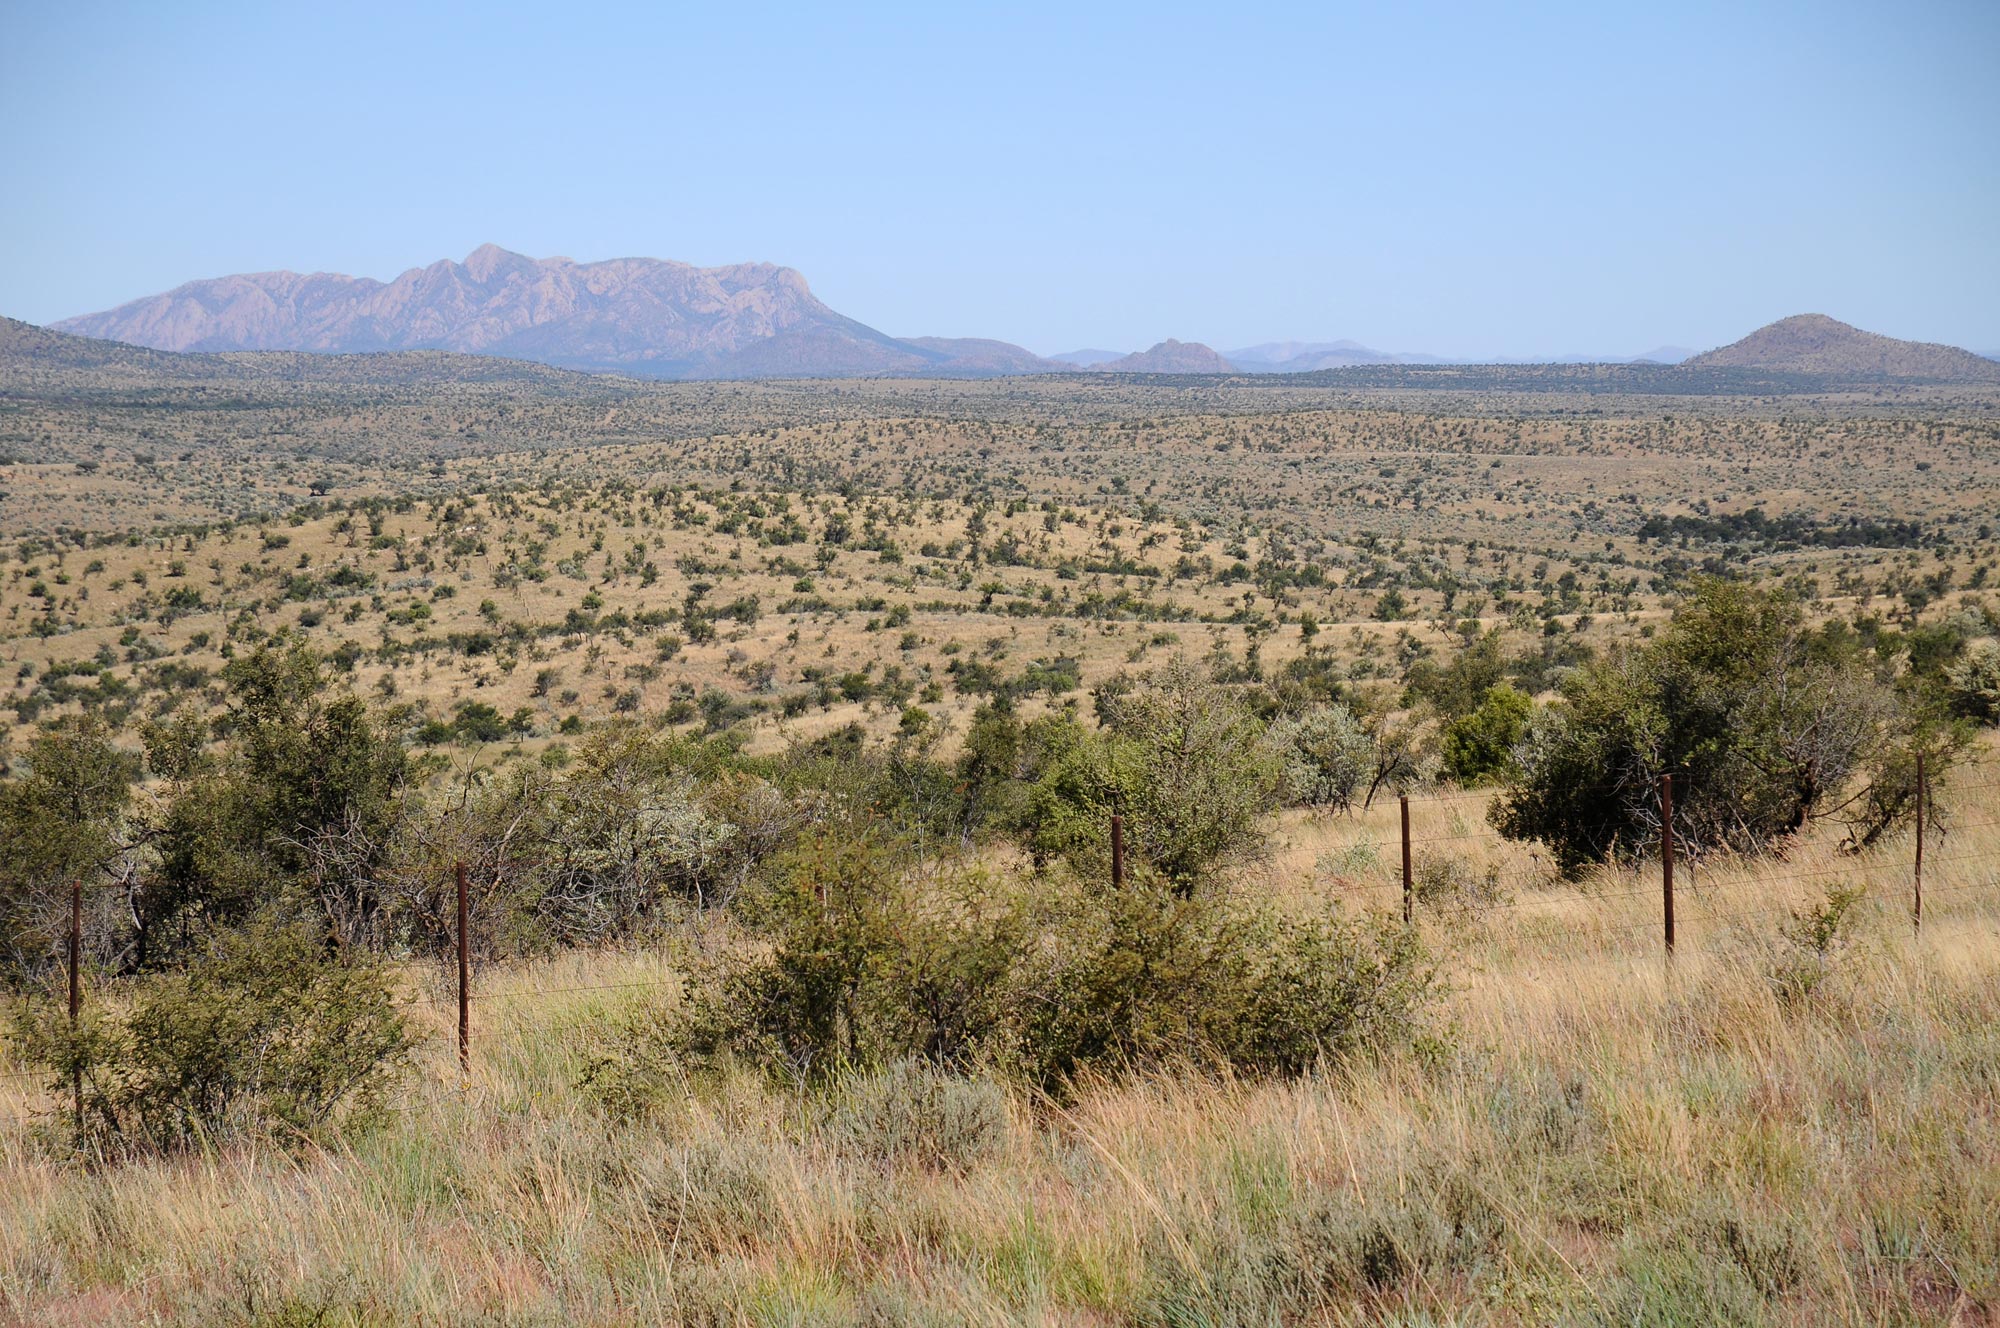 Eine typische namibische Savanne im Khomas-Hochland mit vereinzelten Bäumen und Büschen. Der durchschnittliche Jahresniederschlag beträgt hier ungefähr 300 mm und die Gehölze sind recht niedrig.